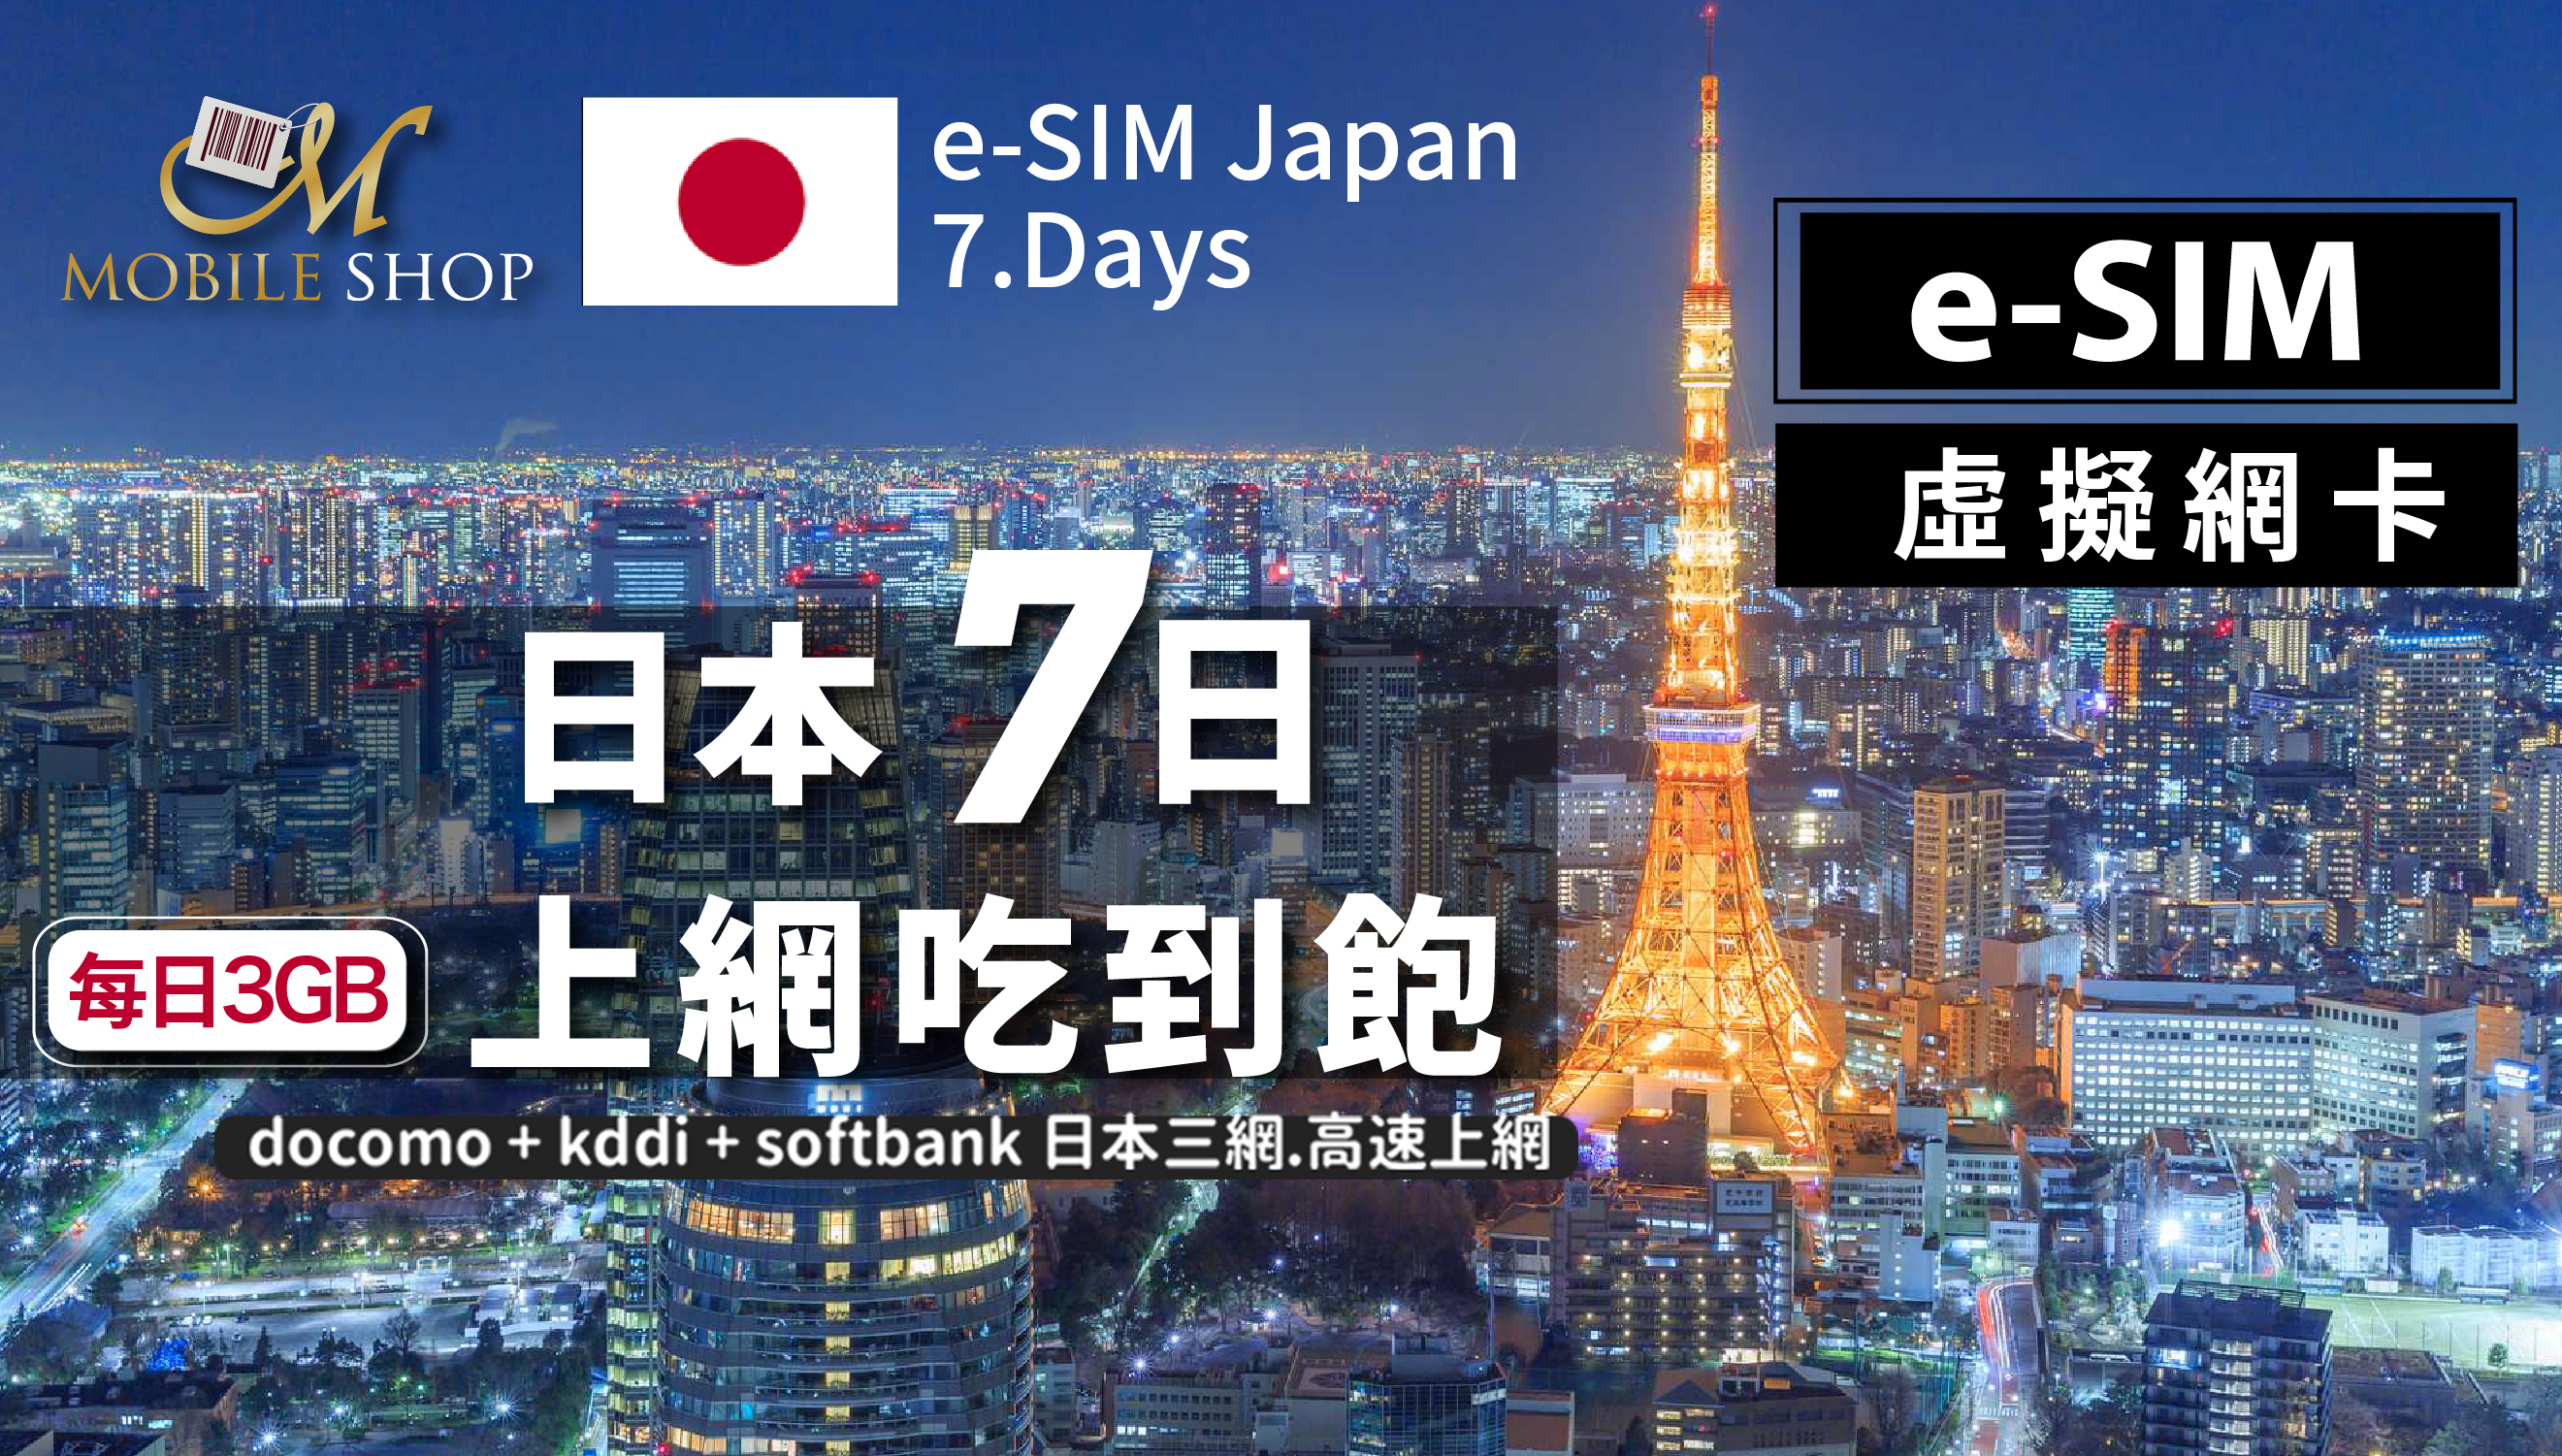 eSIM Japan 7days/3GB day unlimited data